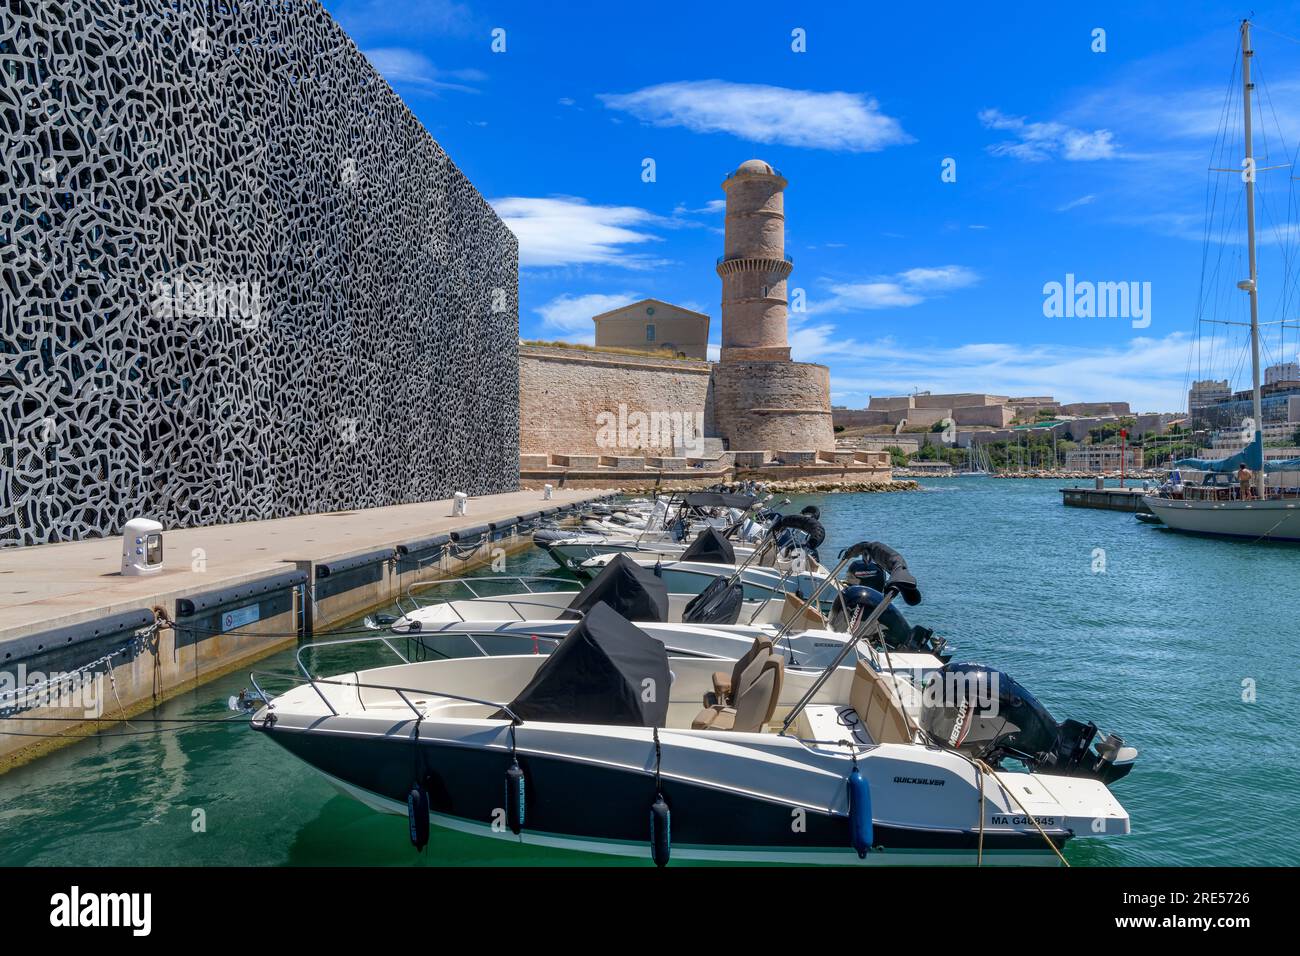 File di motoscafi ormeggiati vicino alla città di Marsiglia. Dietro c'è la torre in pietra del Tour du Fanal, costruita nel 1644 per guidare le navi nel vecchio porto. Foto Stock